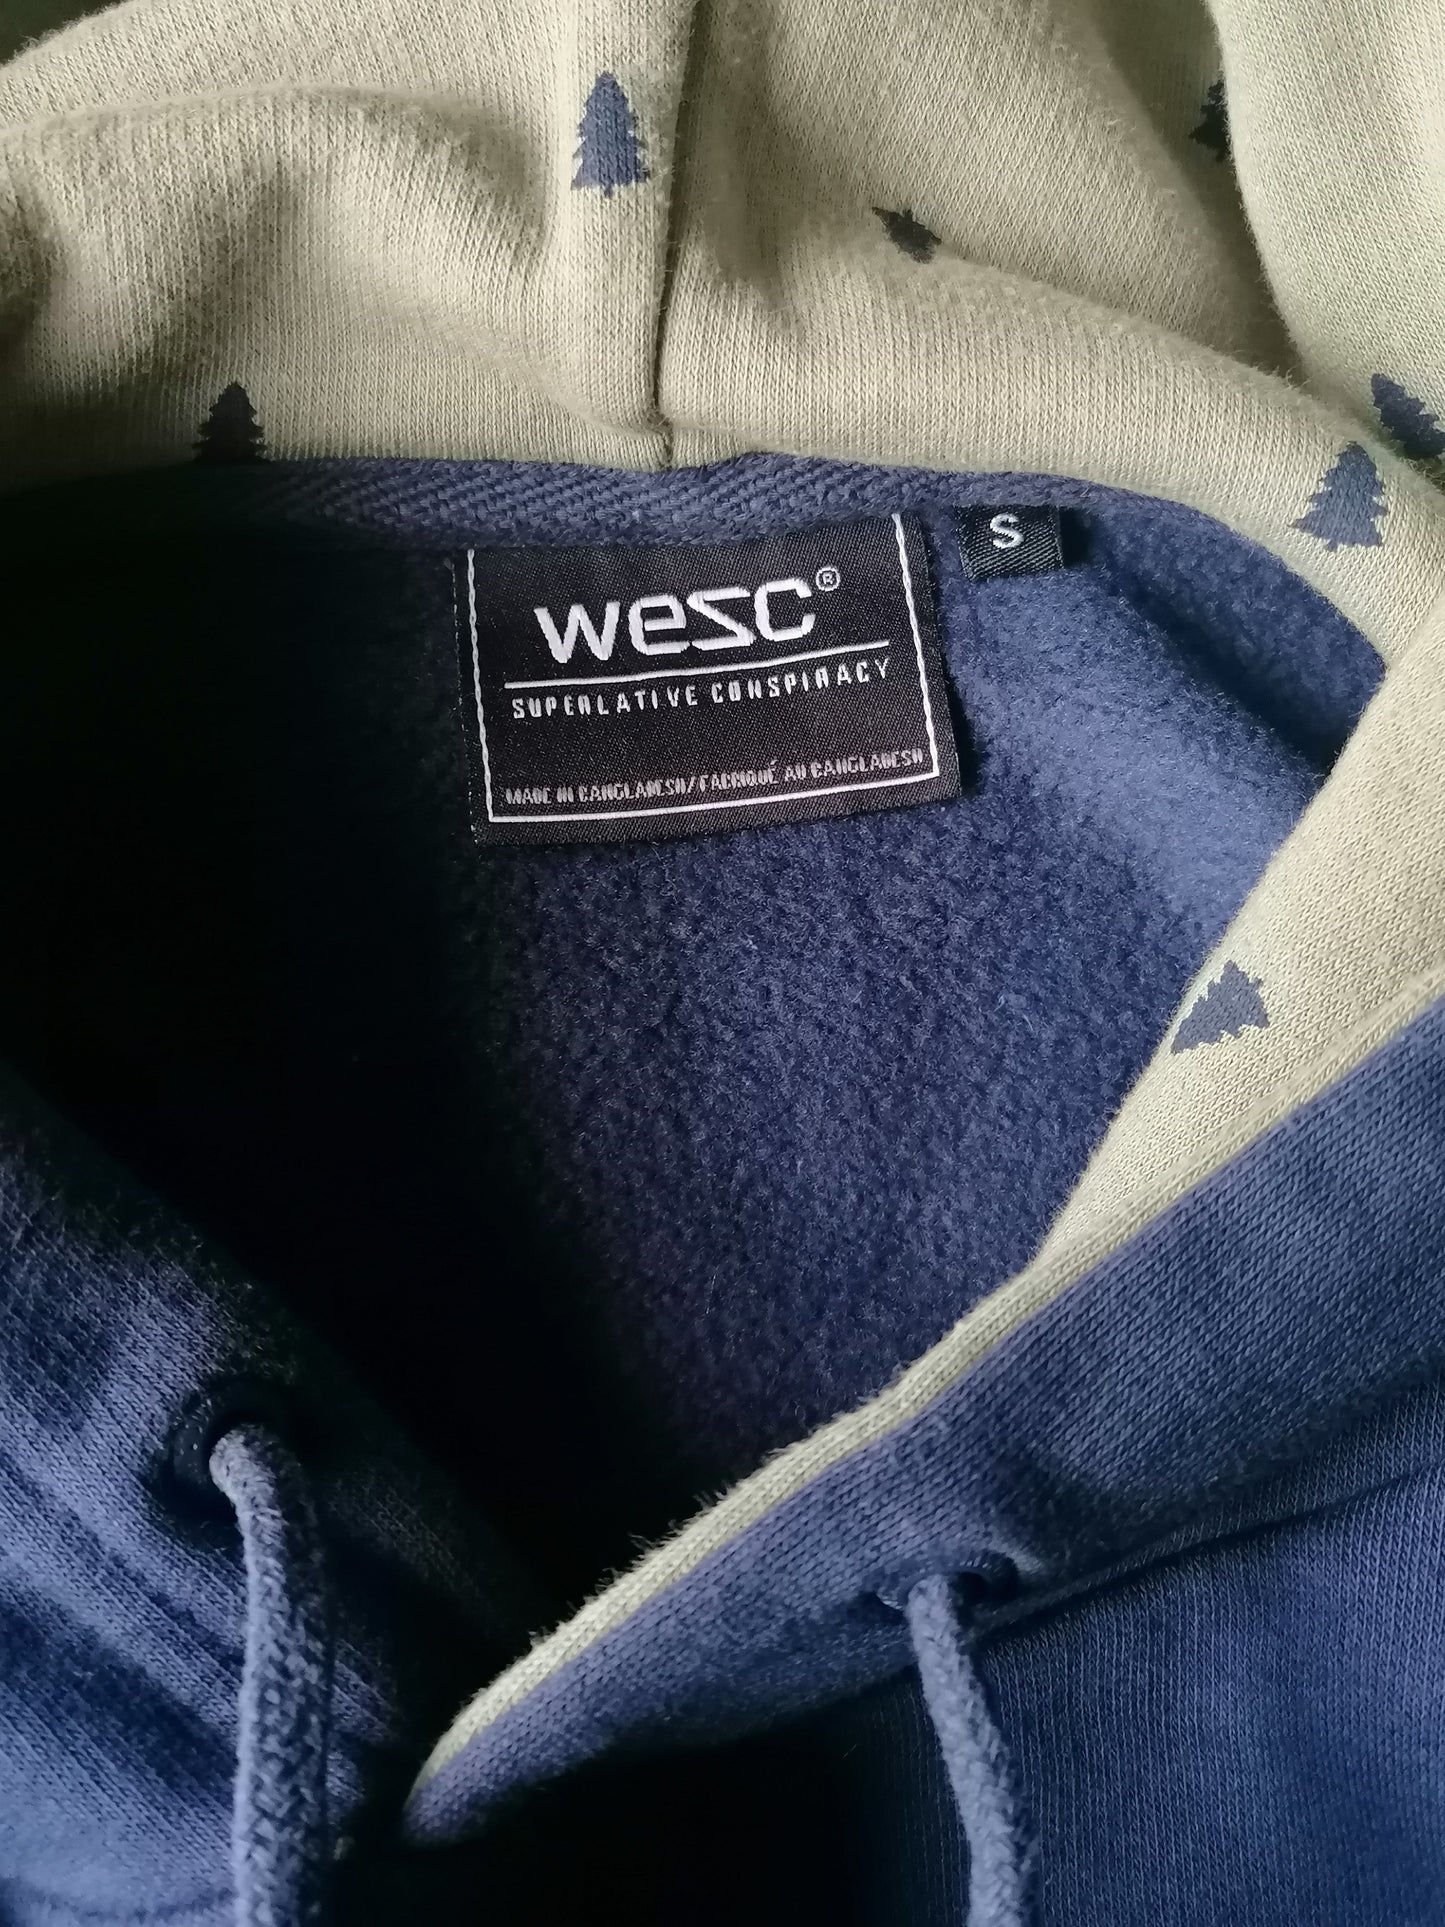 Sudadera con capucha de WESC. Color azul oscuro. Tamaño S.